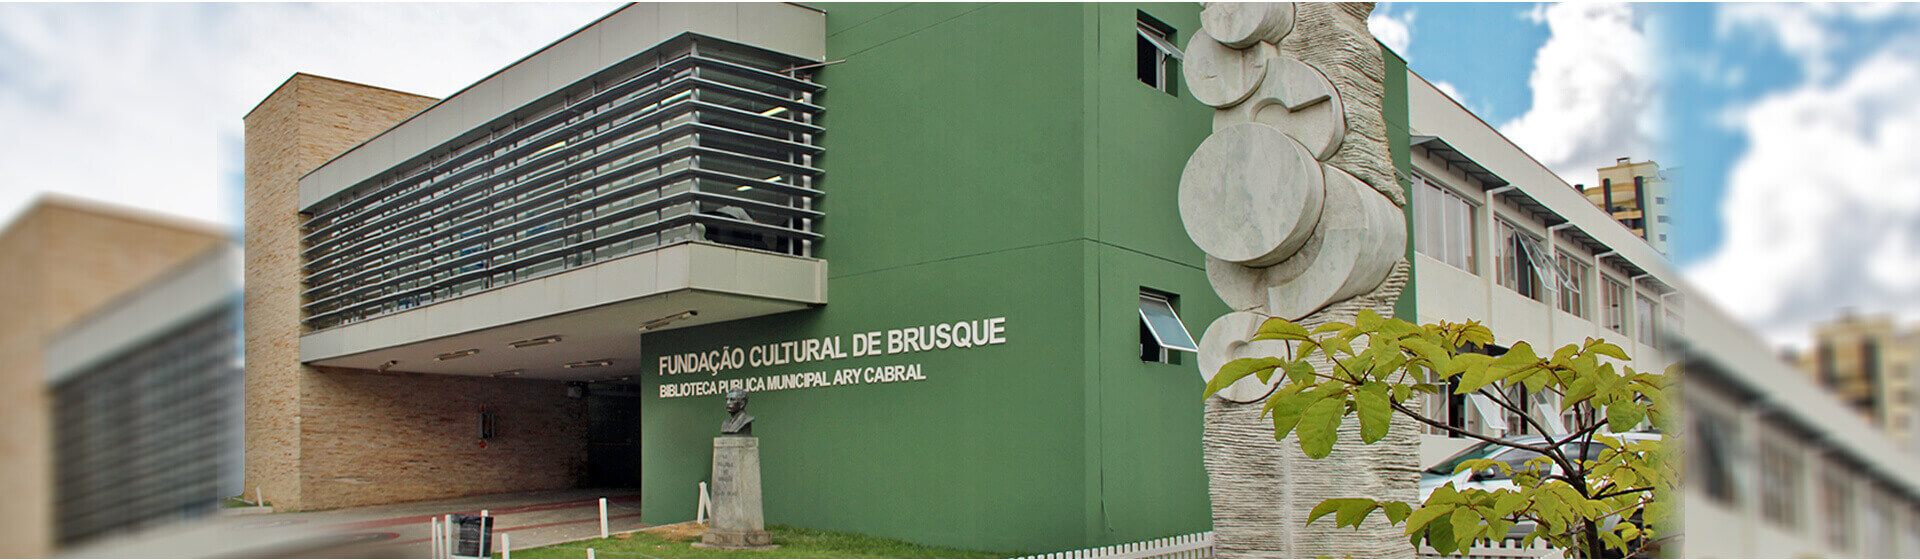 Fundação Cultural de Brusque